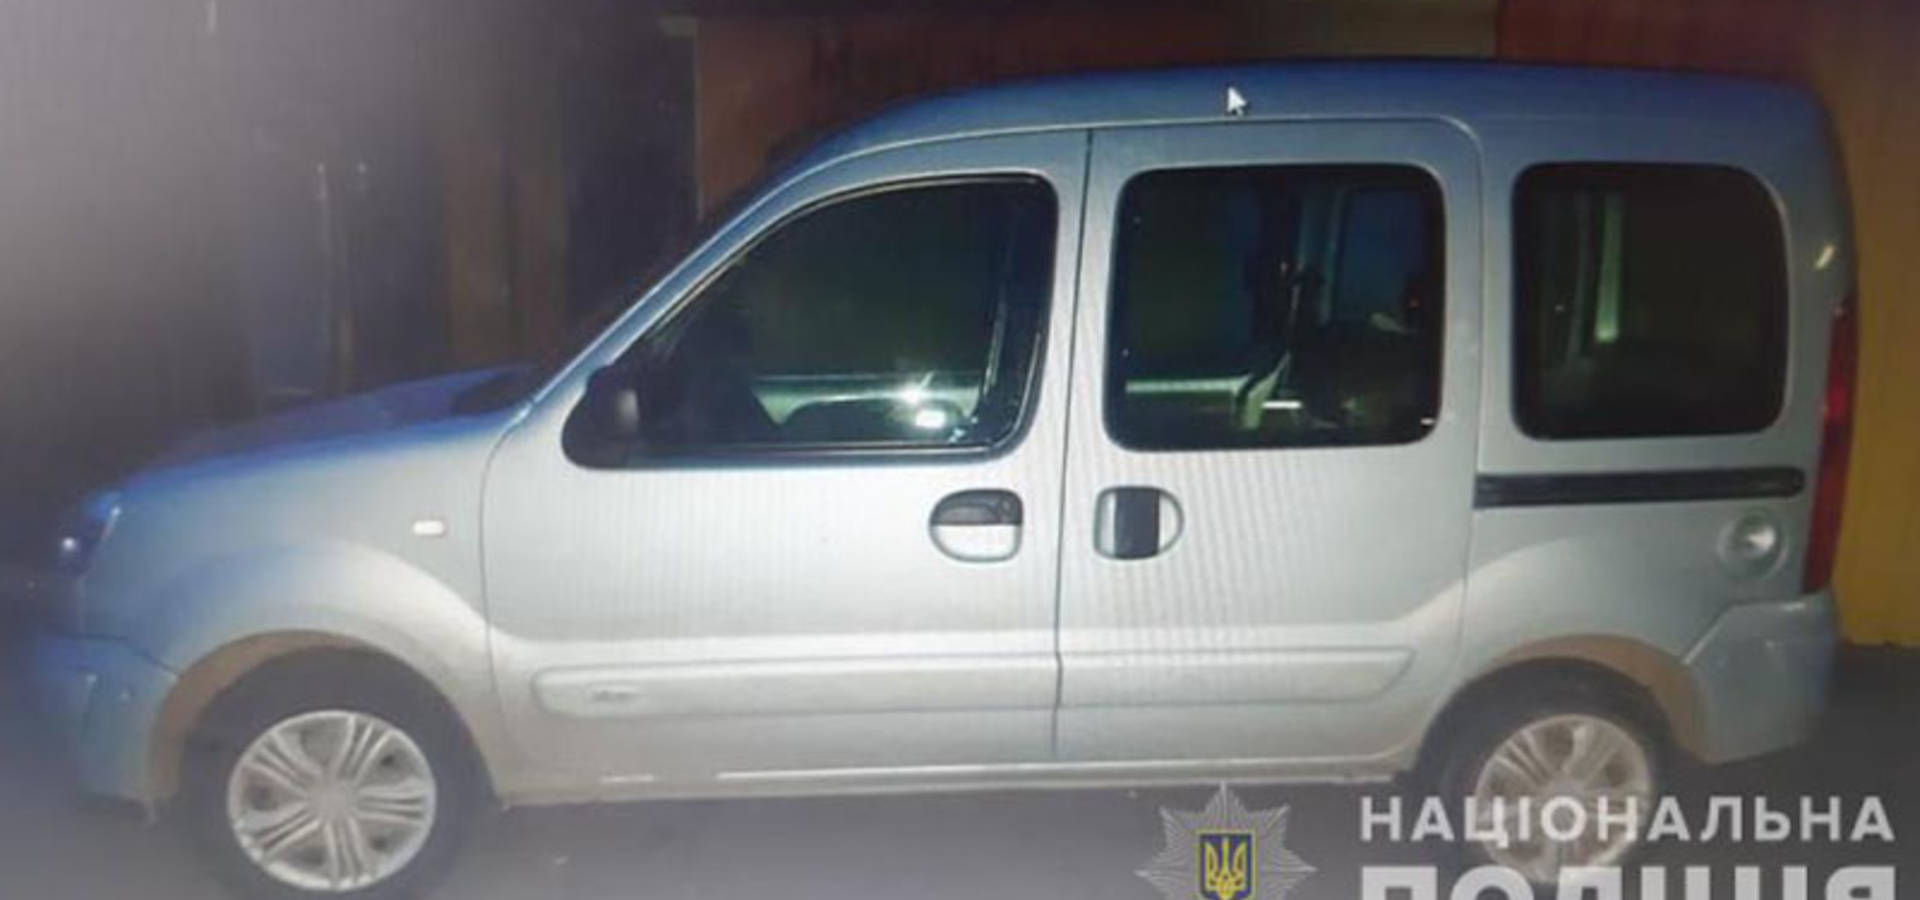 У Вінниці затримали підозрюваного у викрадені авто жителя Хмільника